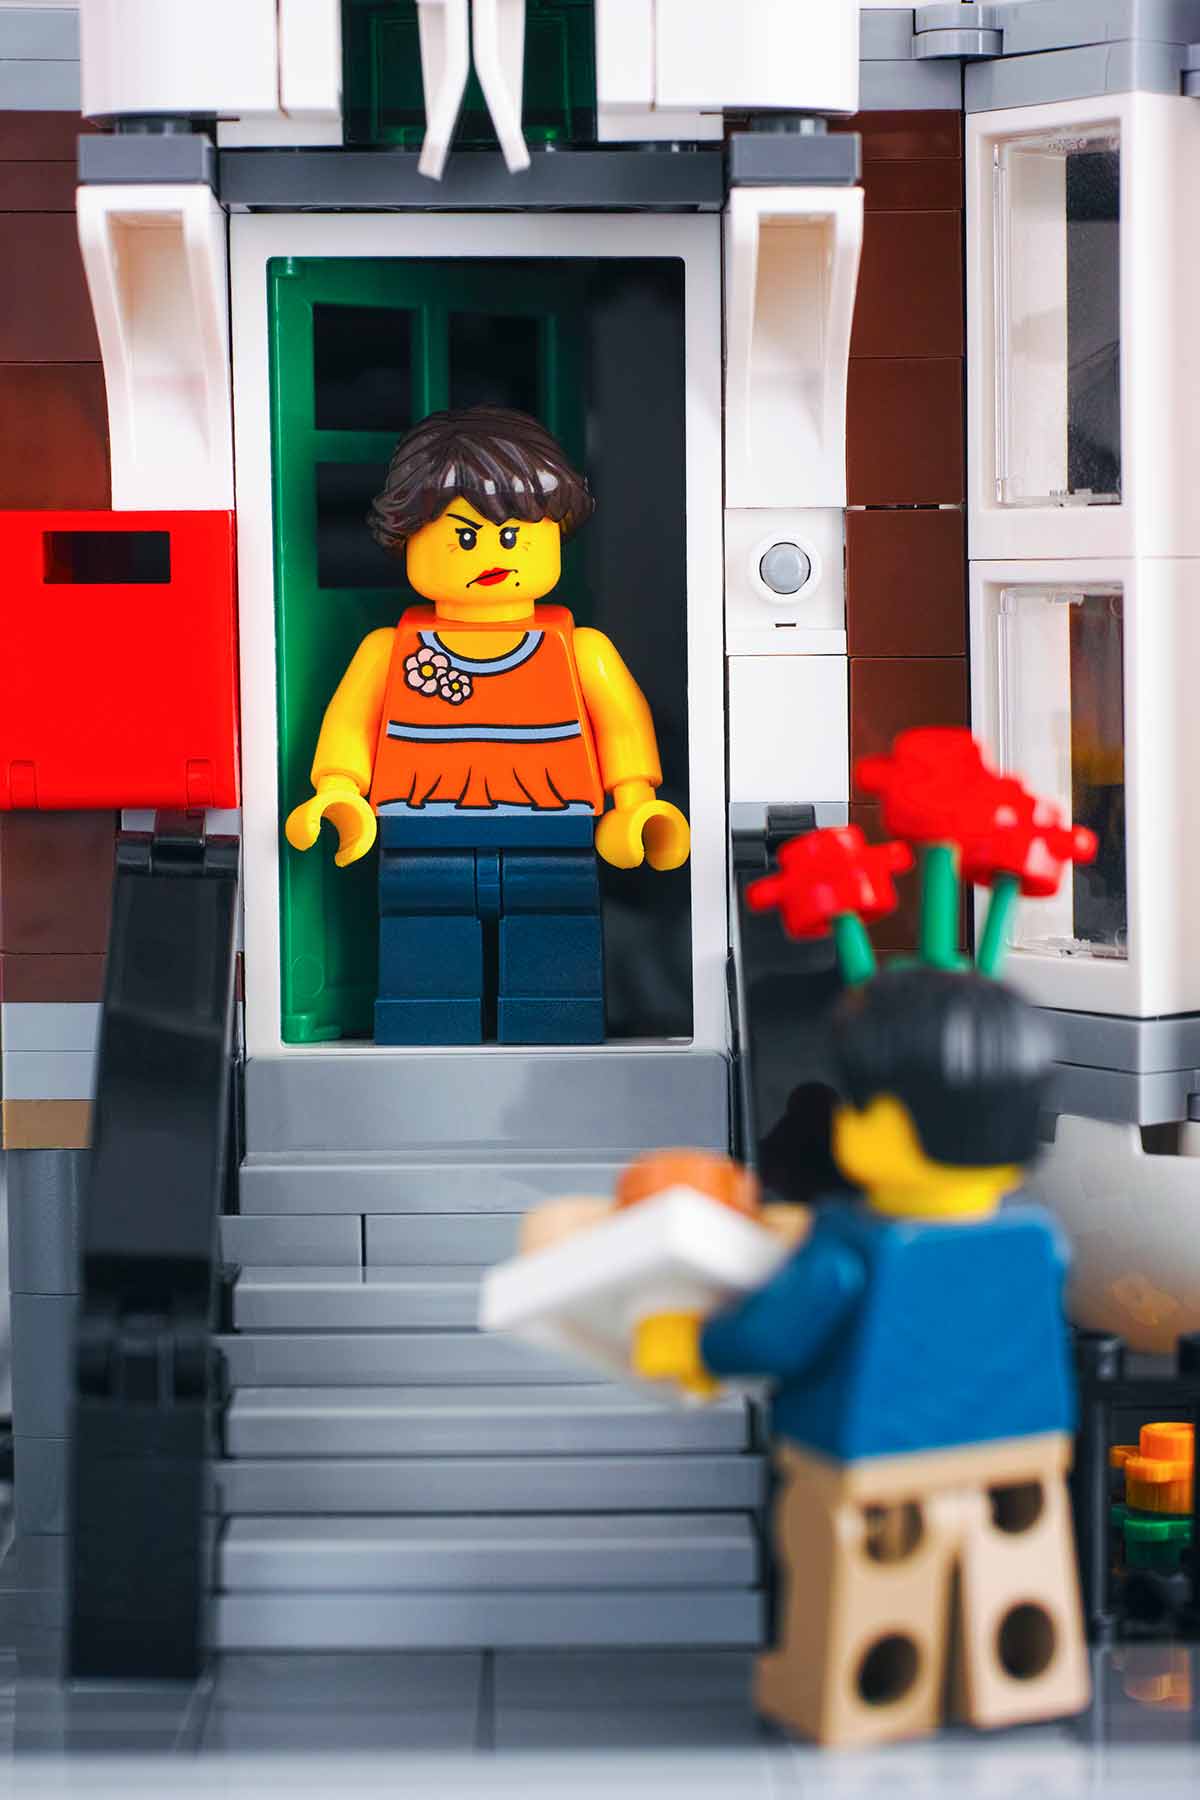 مشهد ليغو لشباب يصلون بالزهور في عطلة نهاية أسبوع غير متوقعة؛  يبدو مضيف Lego غاضبًا